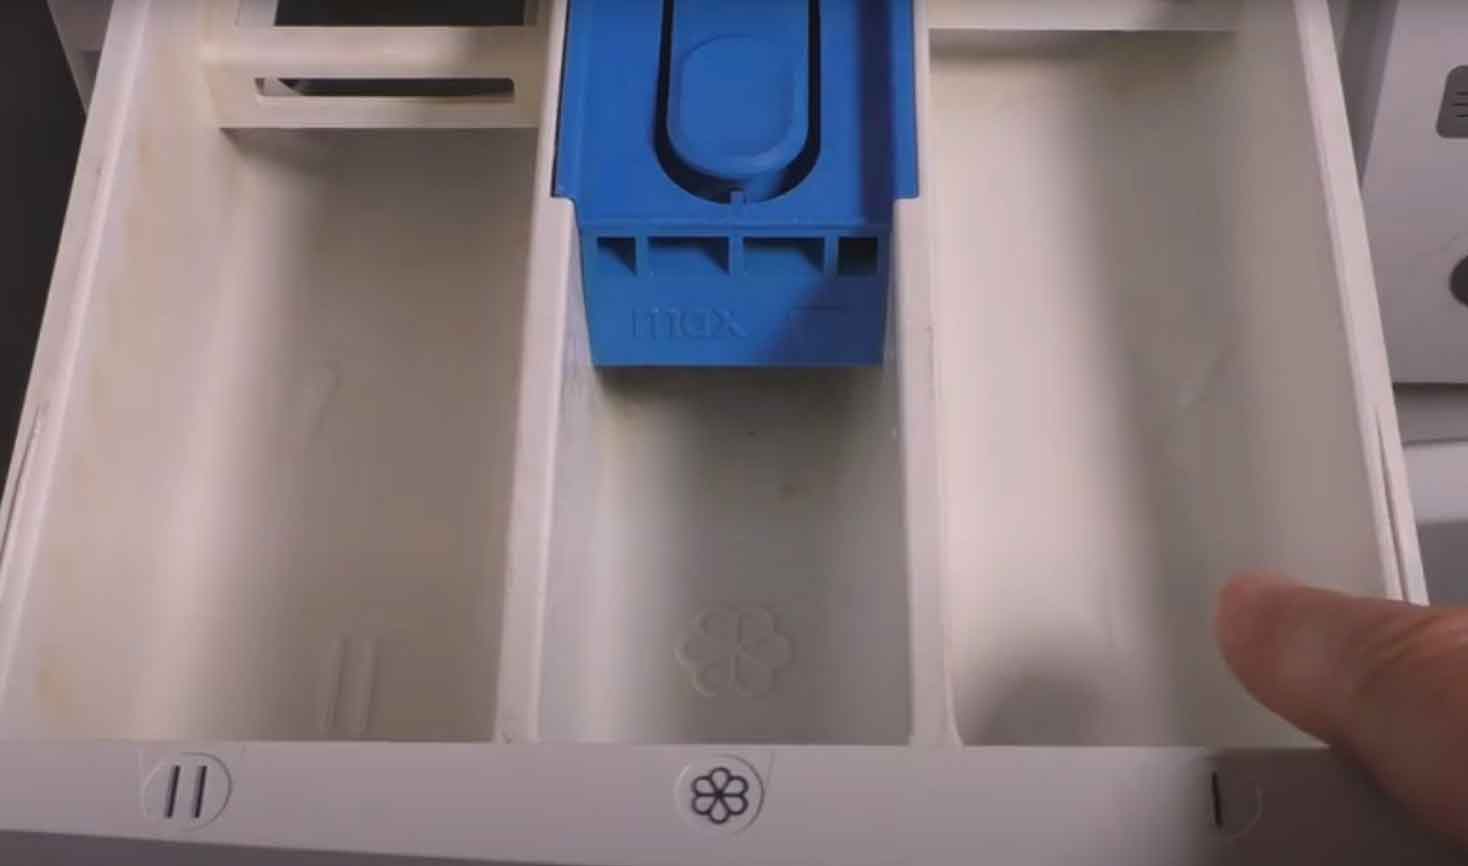 Rein kommt flüssigwaschmittel waschmaschine wo Welches Waschmittel